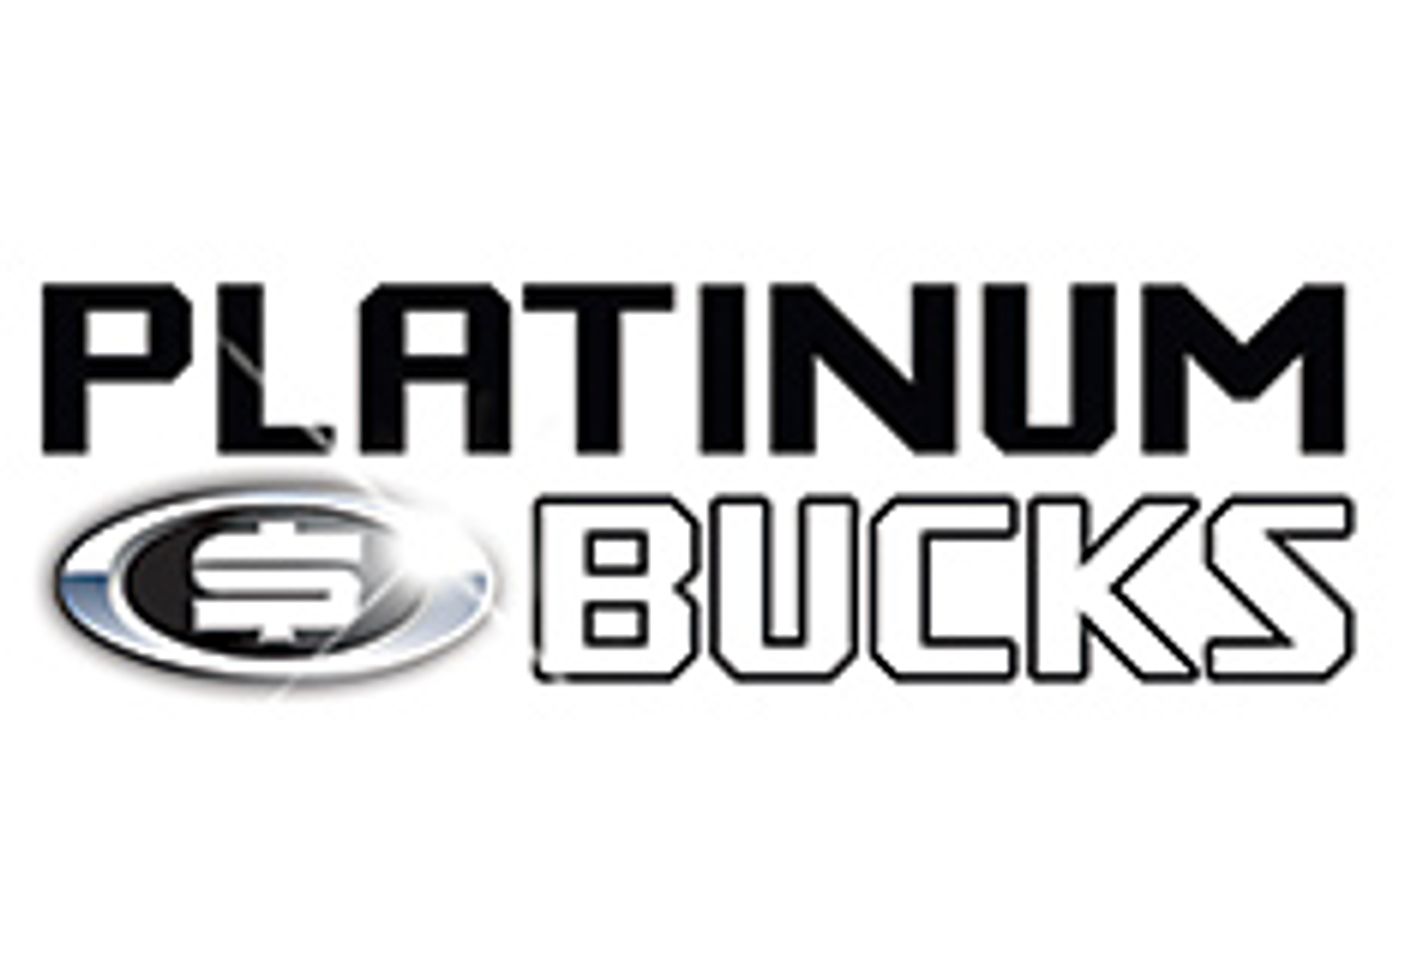 PlatinumBucks Re-launches 18TeenLive.com